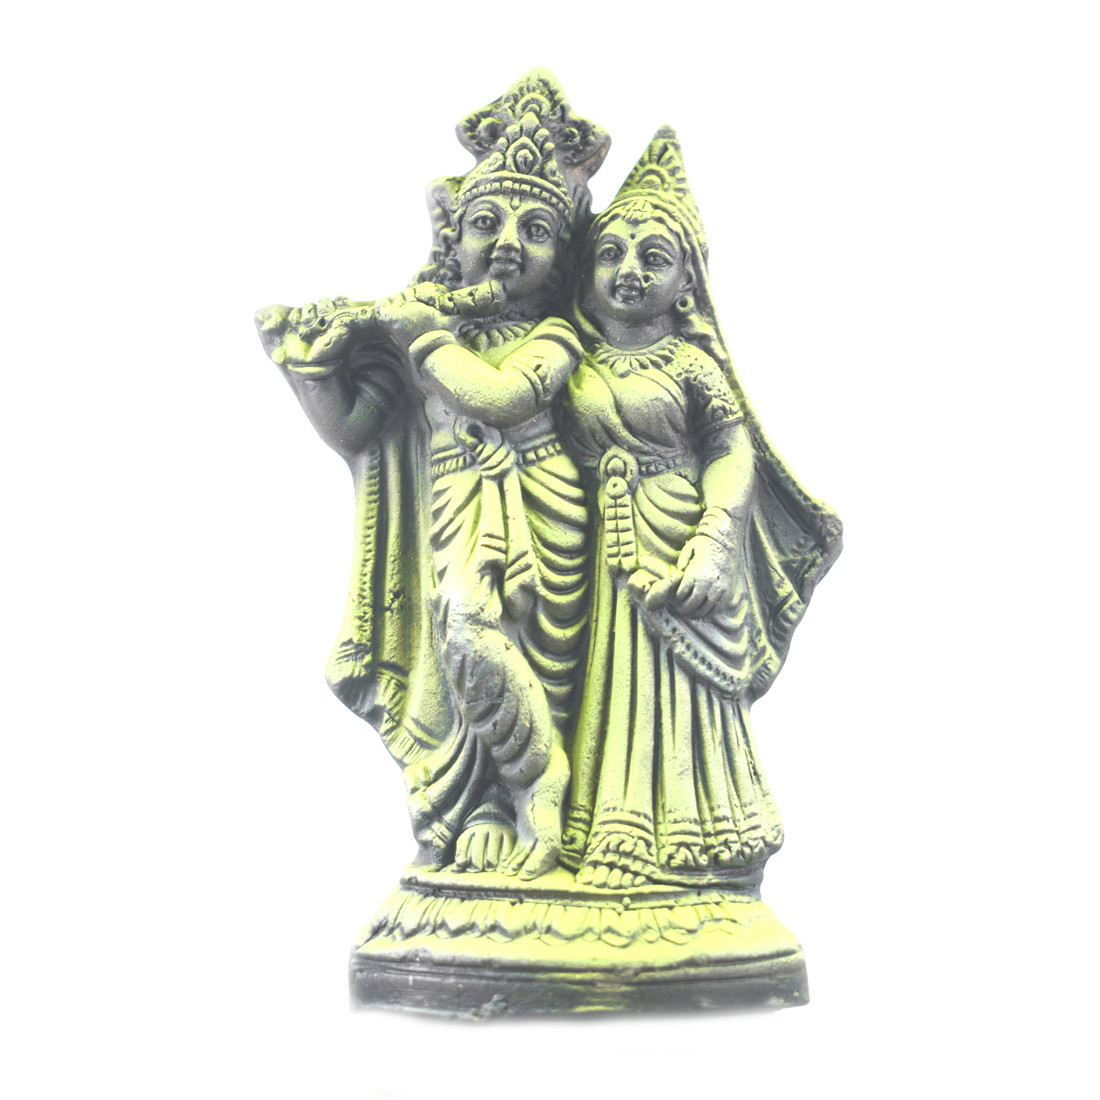 MAYAPURI Radha Krishna Clay Murti Showpiece Idol Statue Sculpture (4.5 inches)